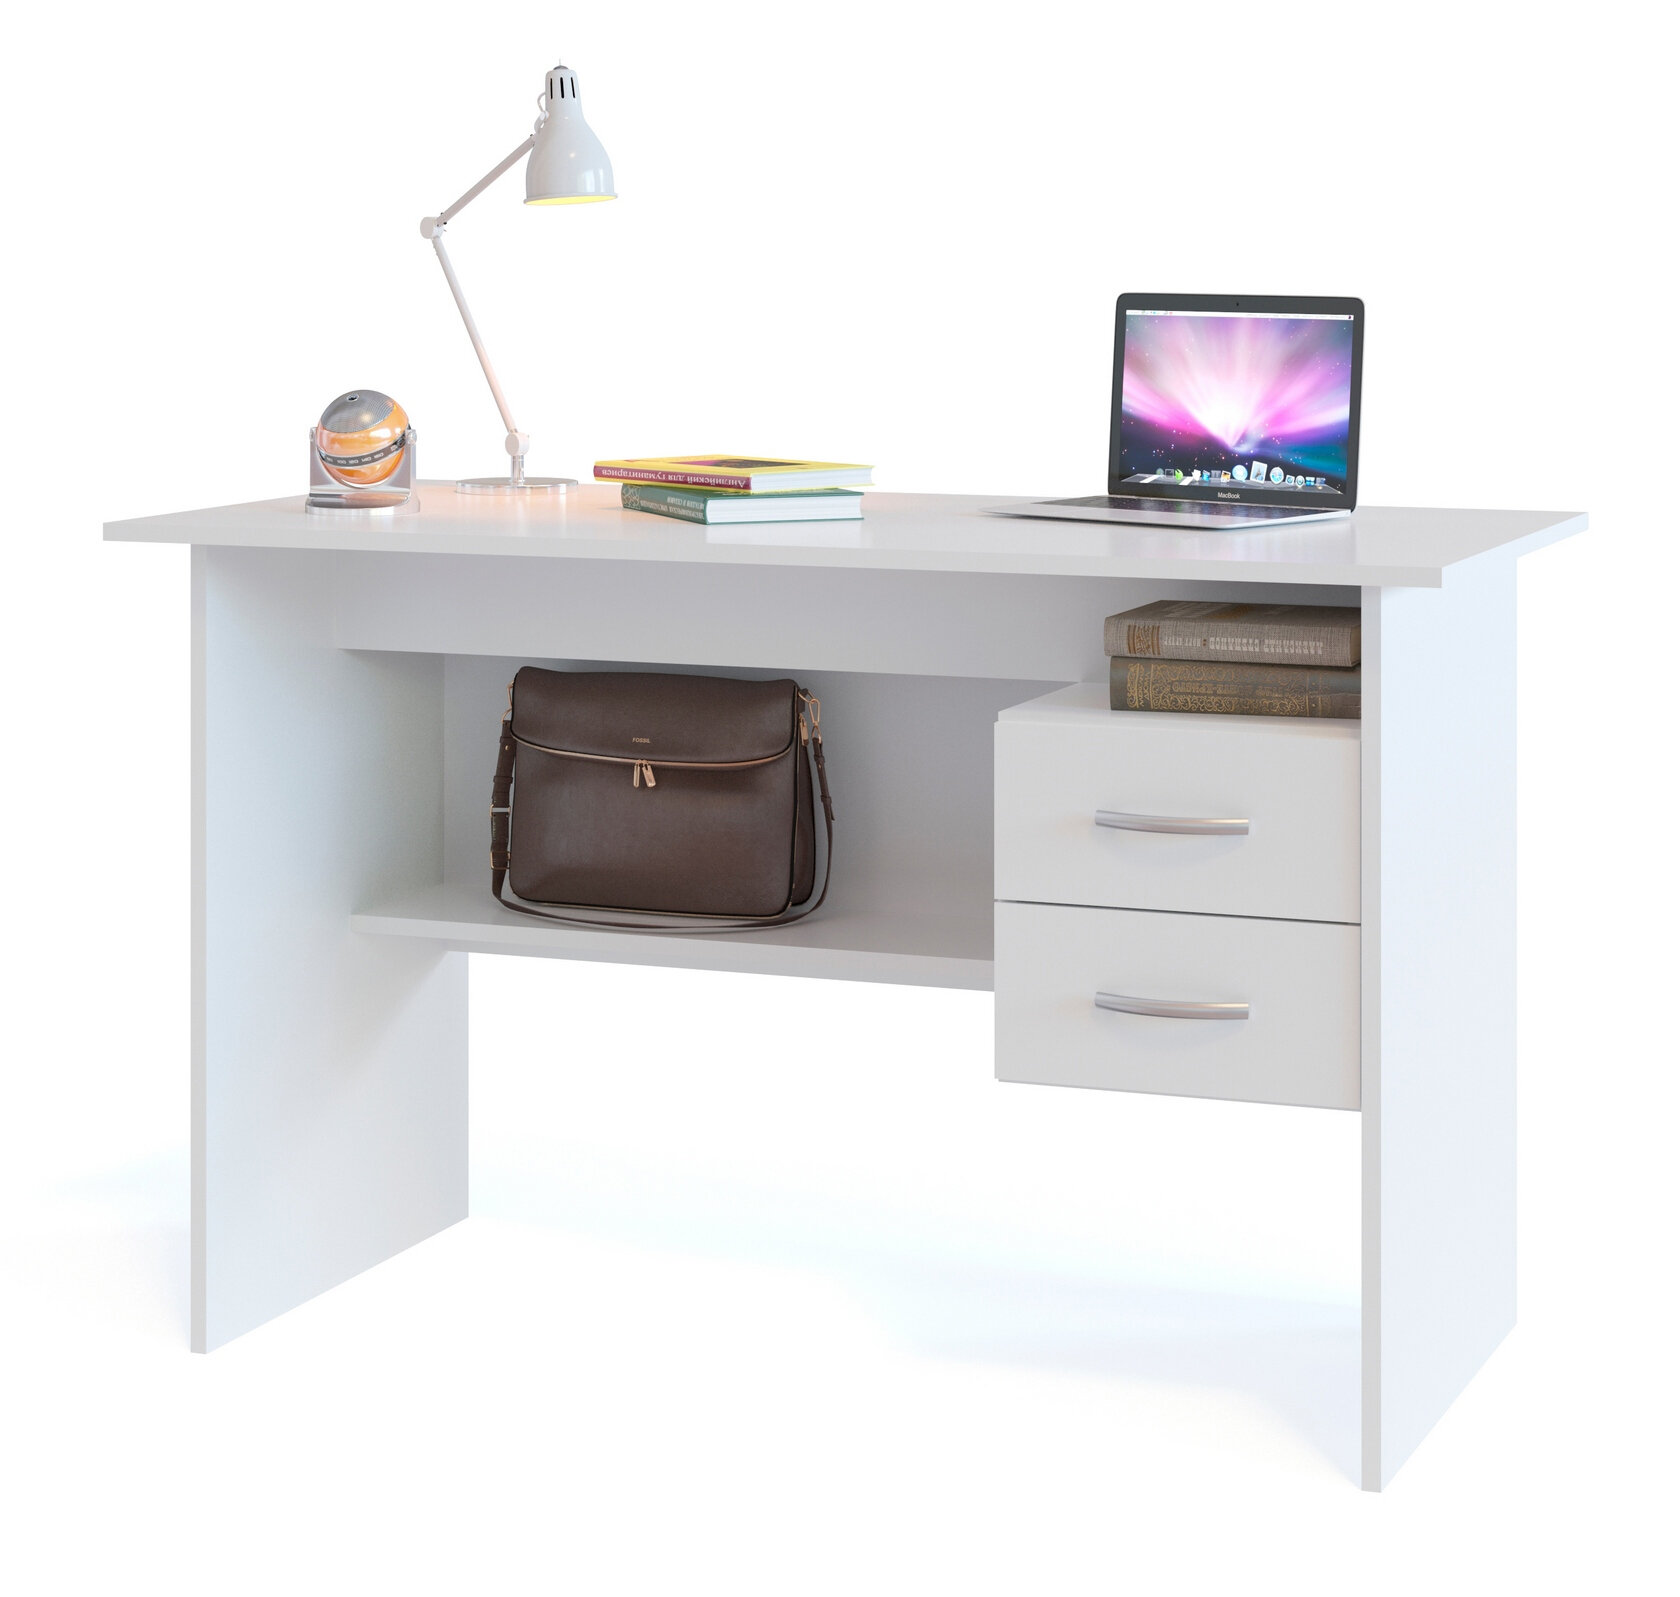 Письменный стол со встроенной тумбой СПМ-07-1Б, цвет белый, ШхГхВ 120х60х74 см, универсальная сборка